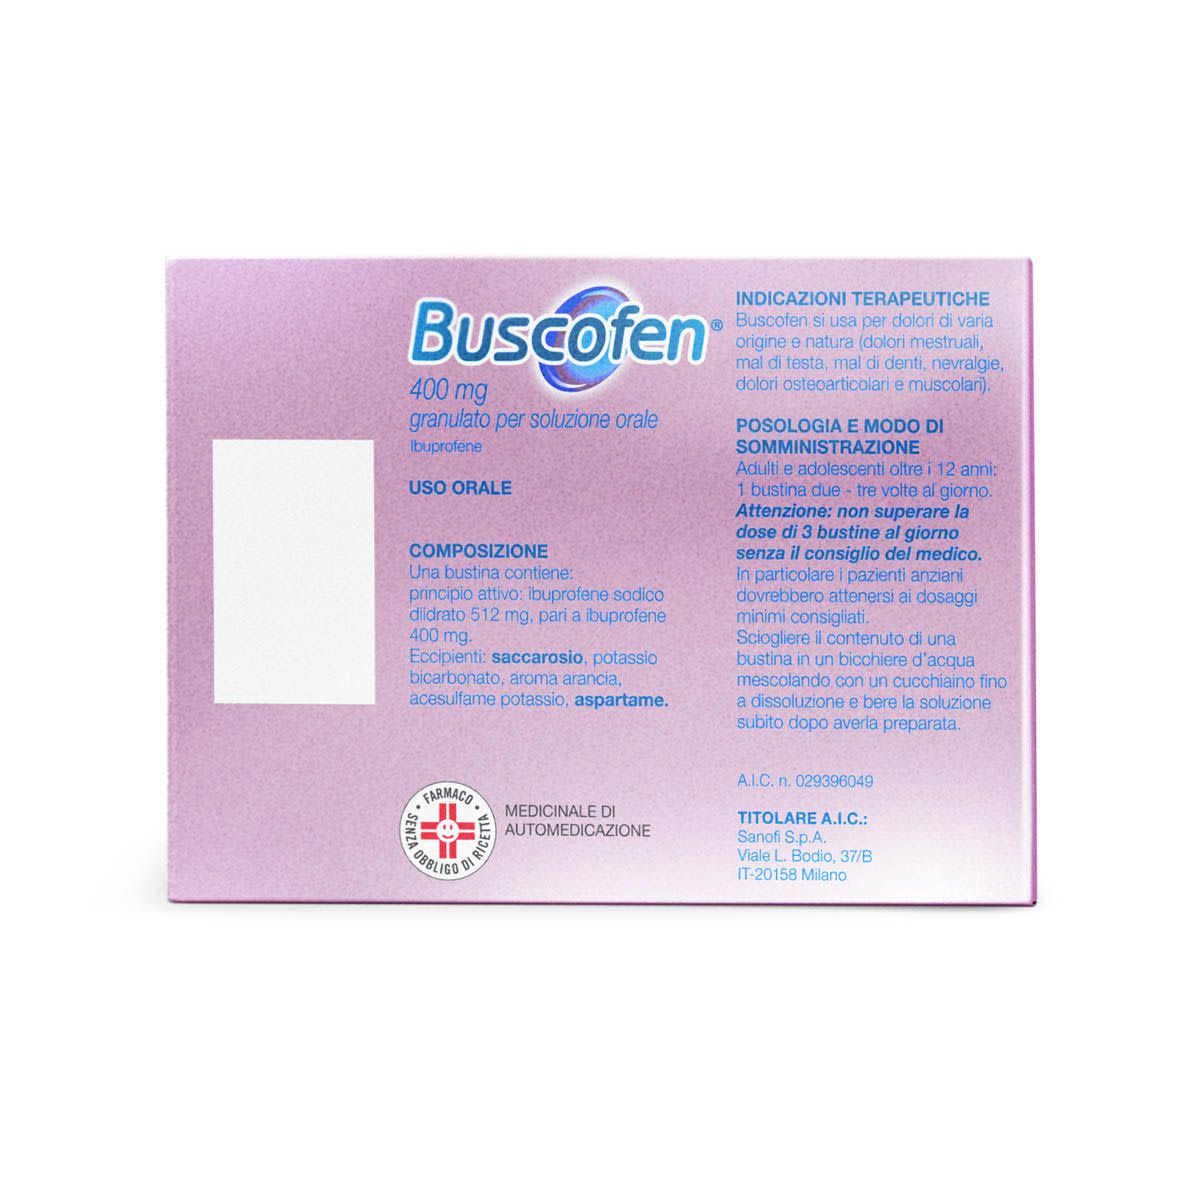 029396049 - Buscofen Ibuprofene 400mg 10 bustine soluzione orale - 7856770_4.jpg